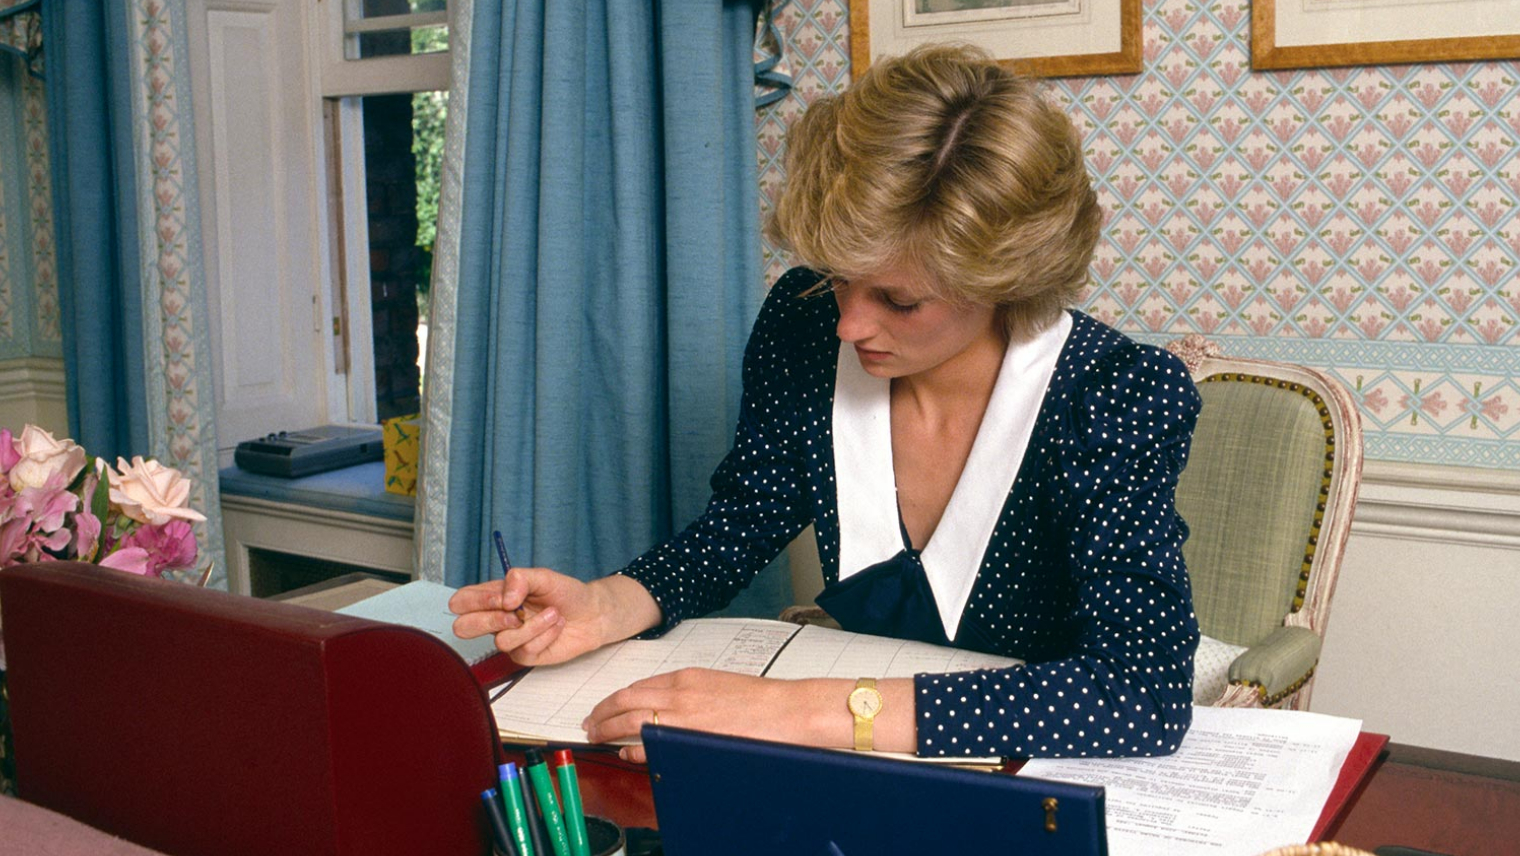 Image of Diana, Princess of Wales at work at a desk